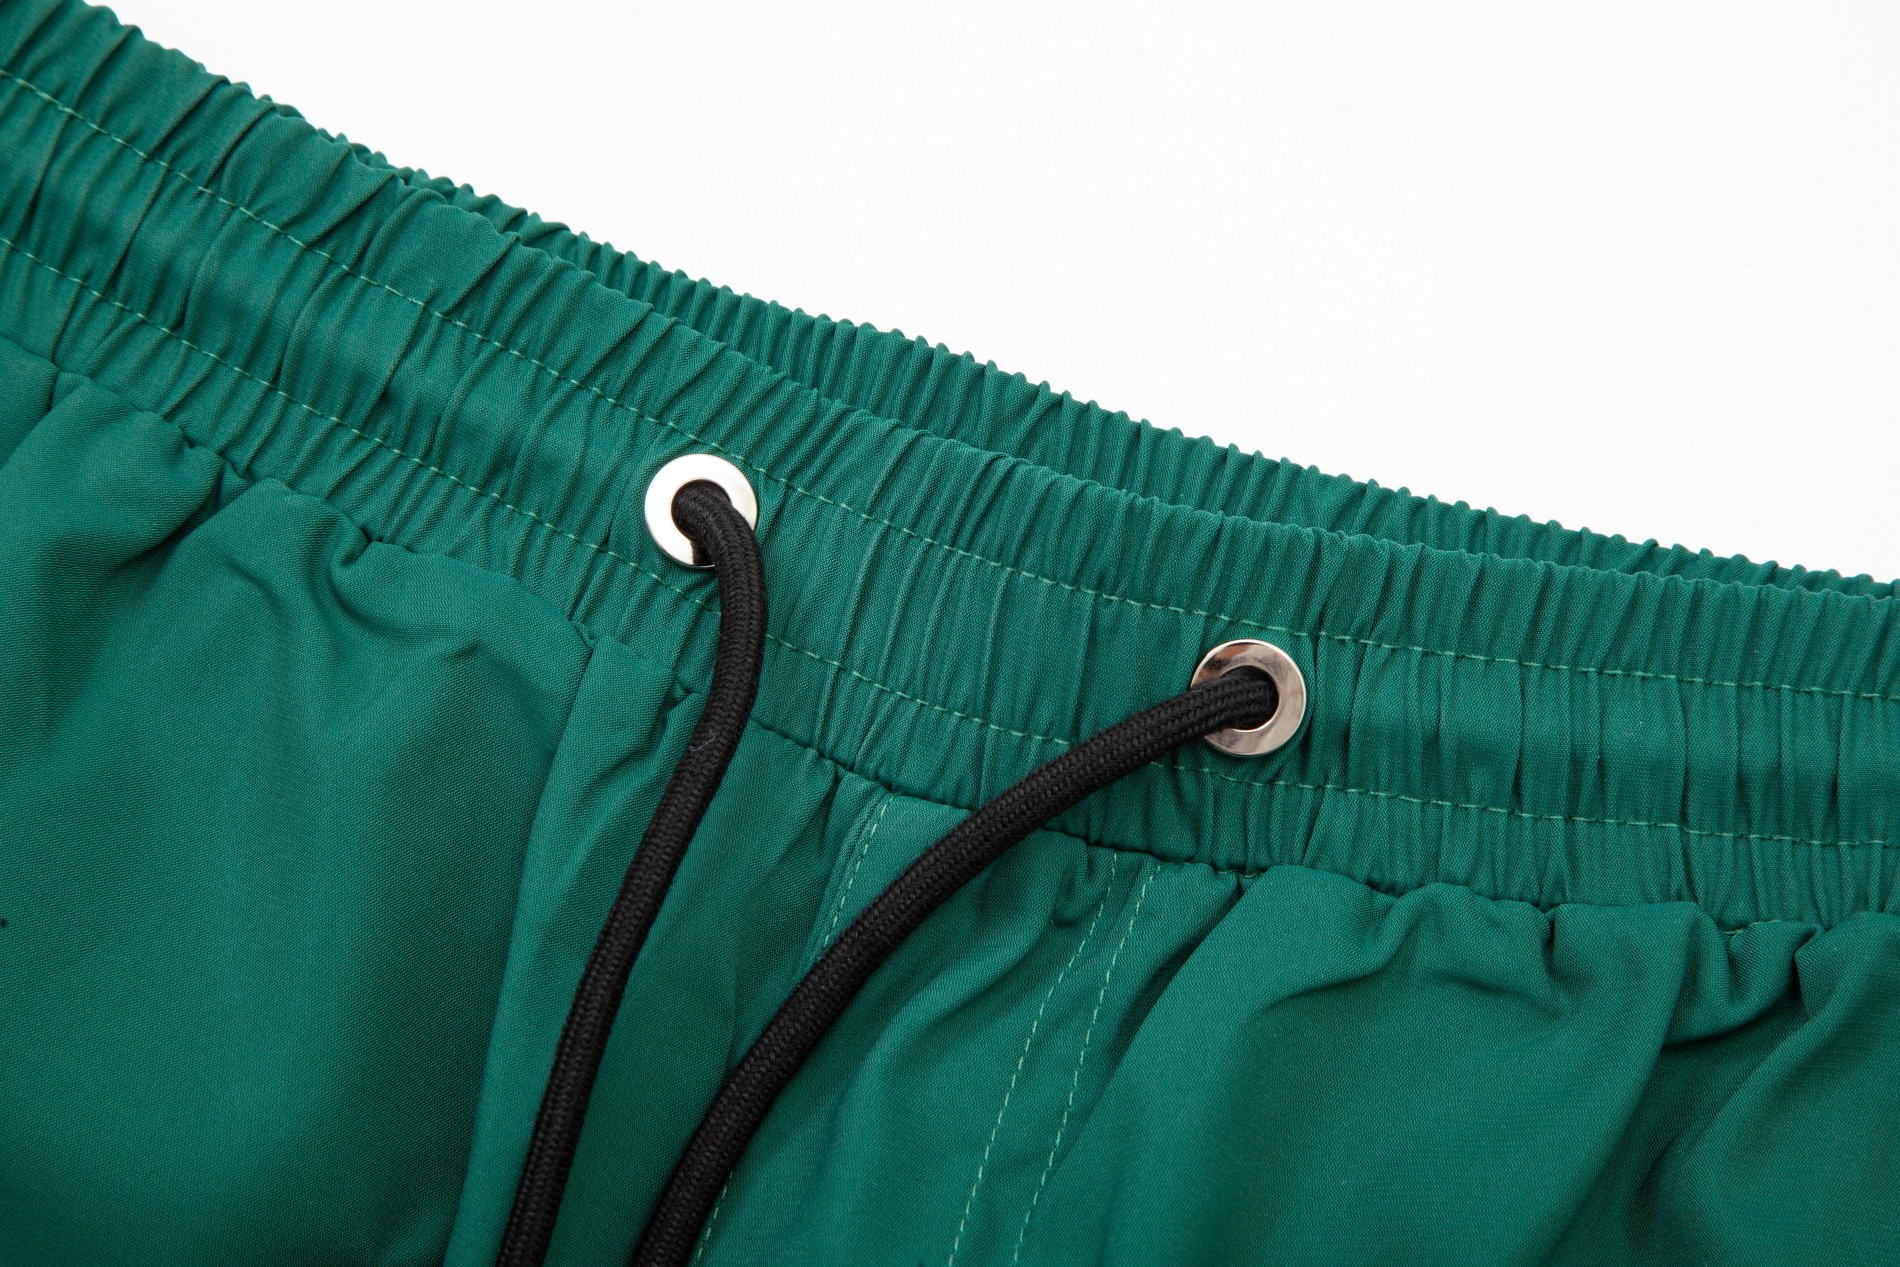 お買い得豊富な メンズ クロムハーツズボンスーパーコピー ズボン ビーチパンツ 人気品 3色可選 グリーン_3